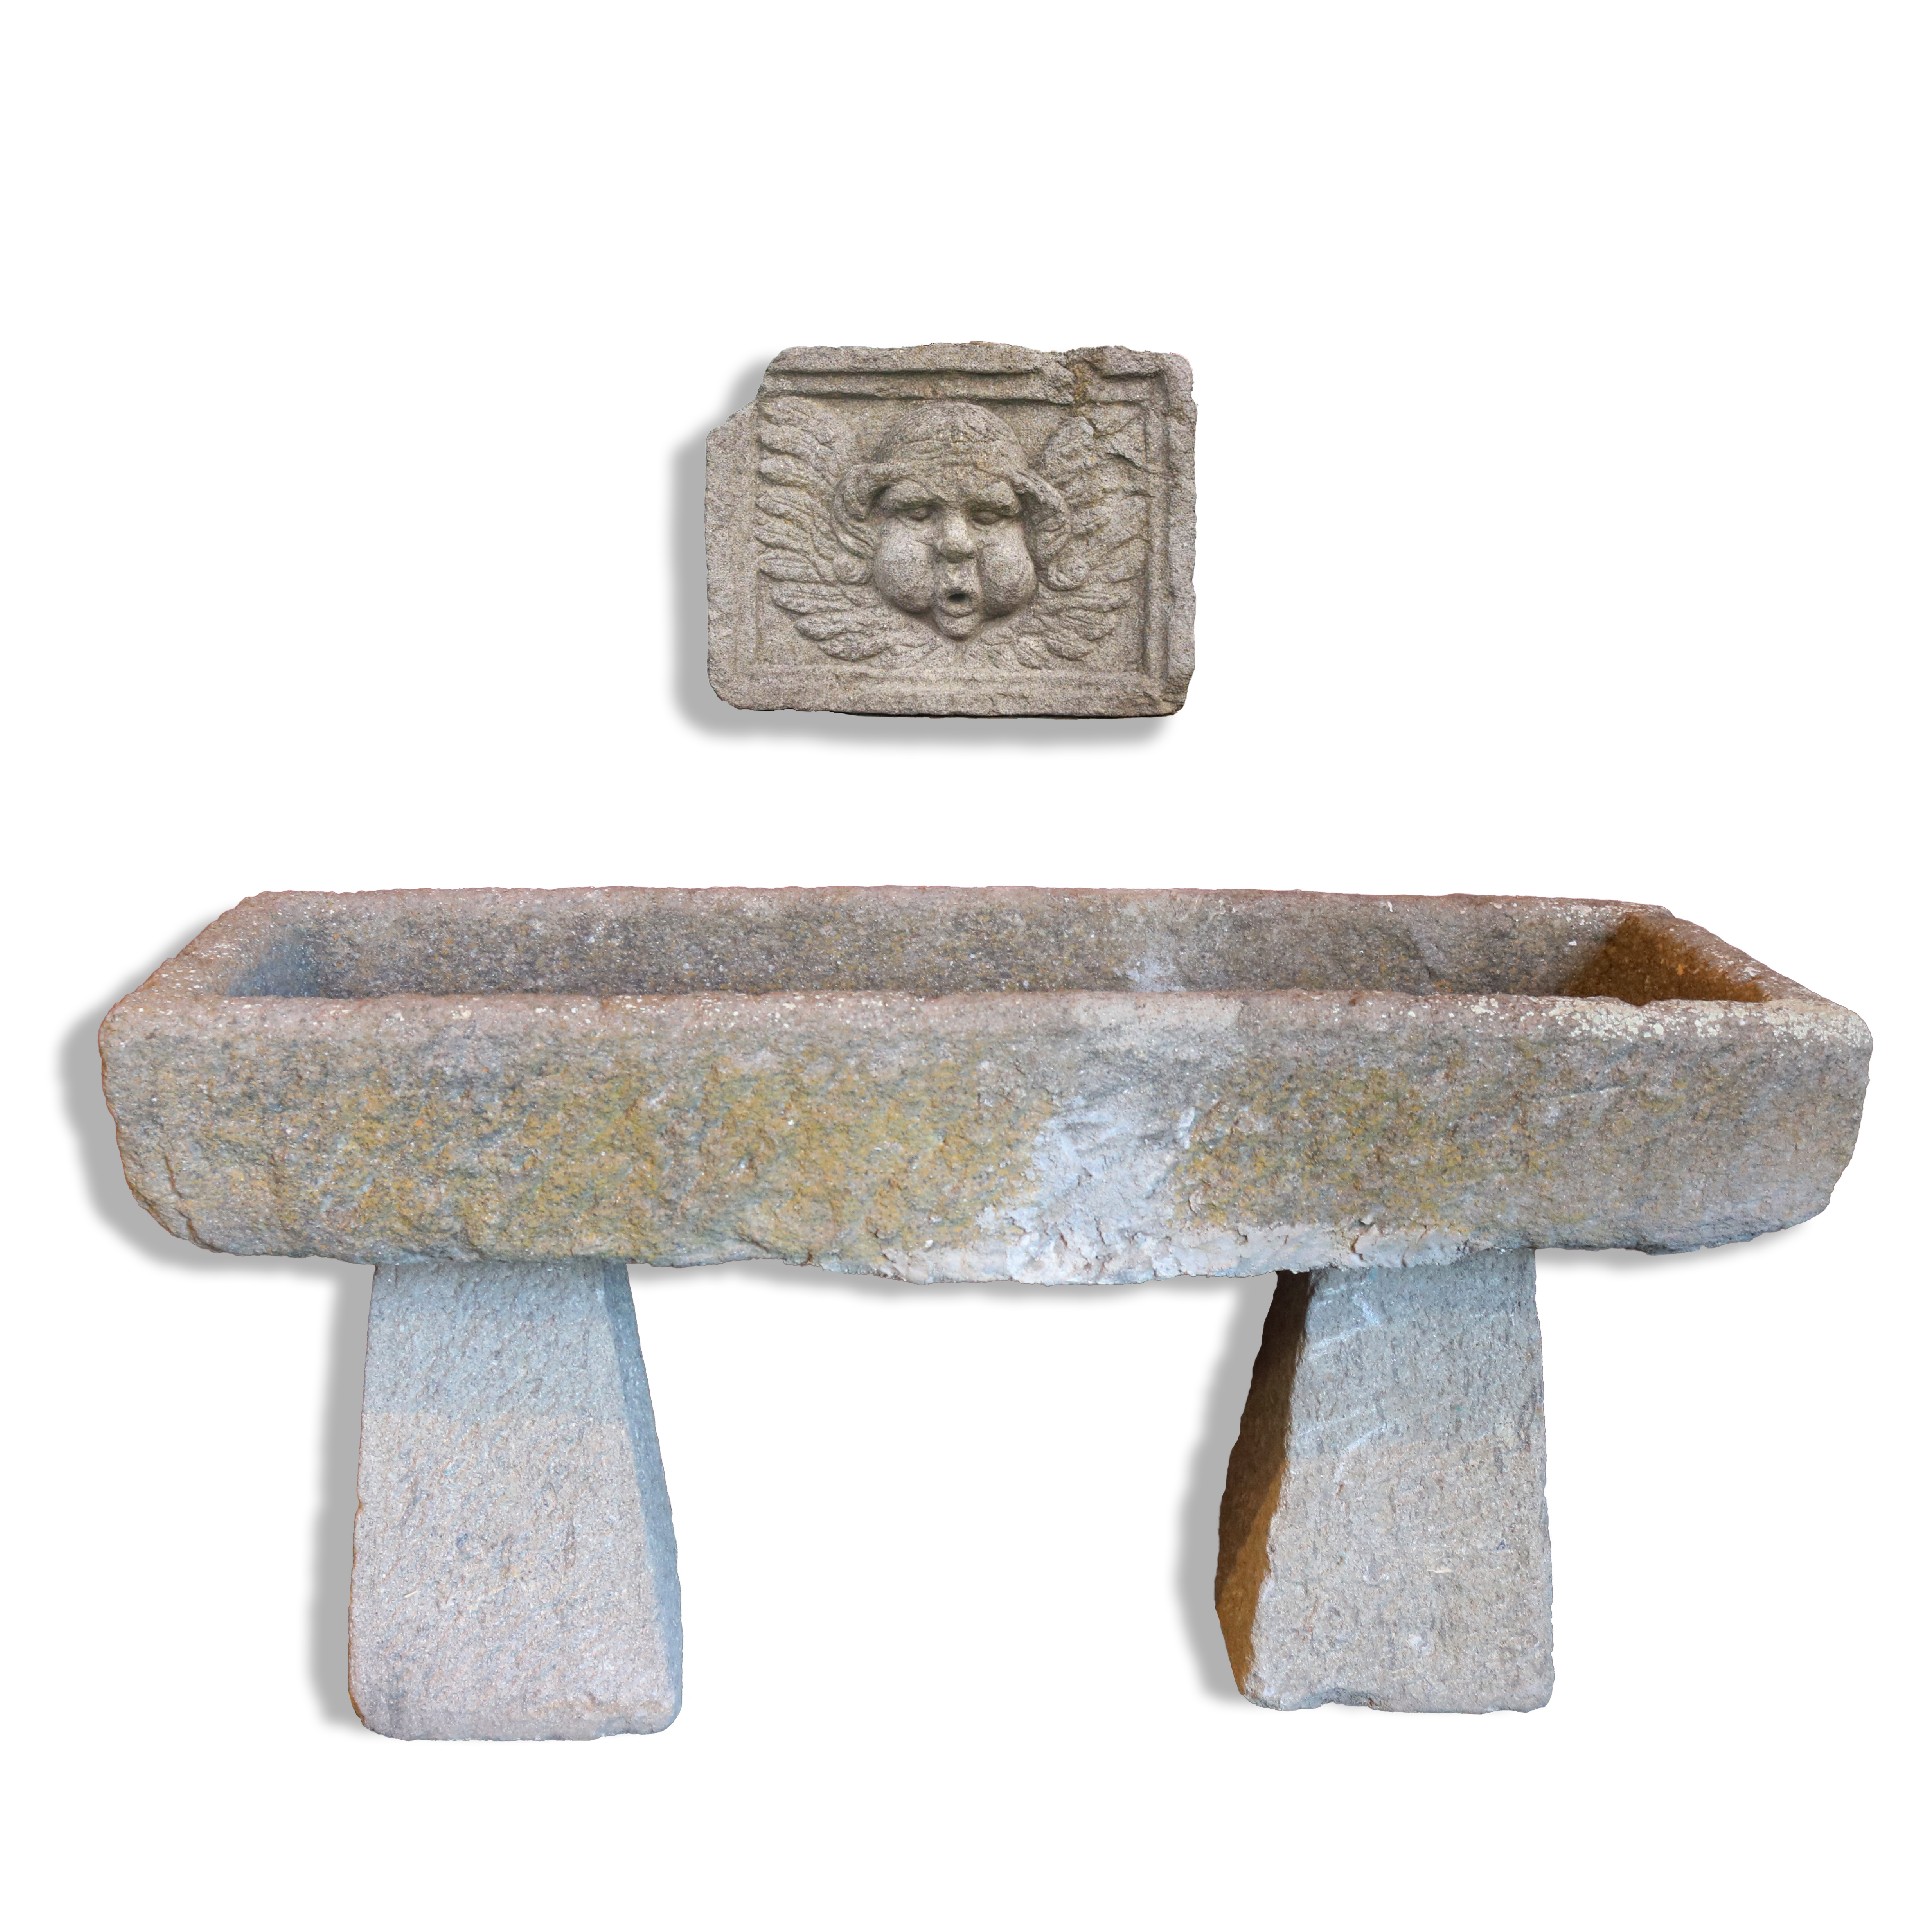 Fontana in pietra con pannello. - Fontane Antiche - Arredo Giardino - Prodotti - Antichità Fiorillo